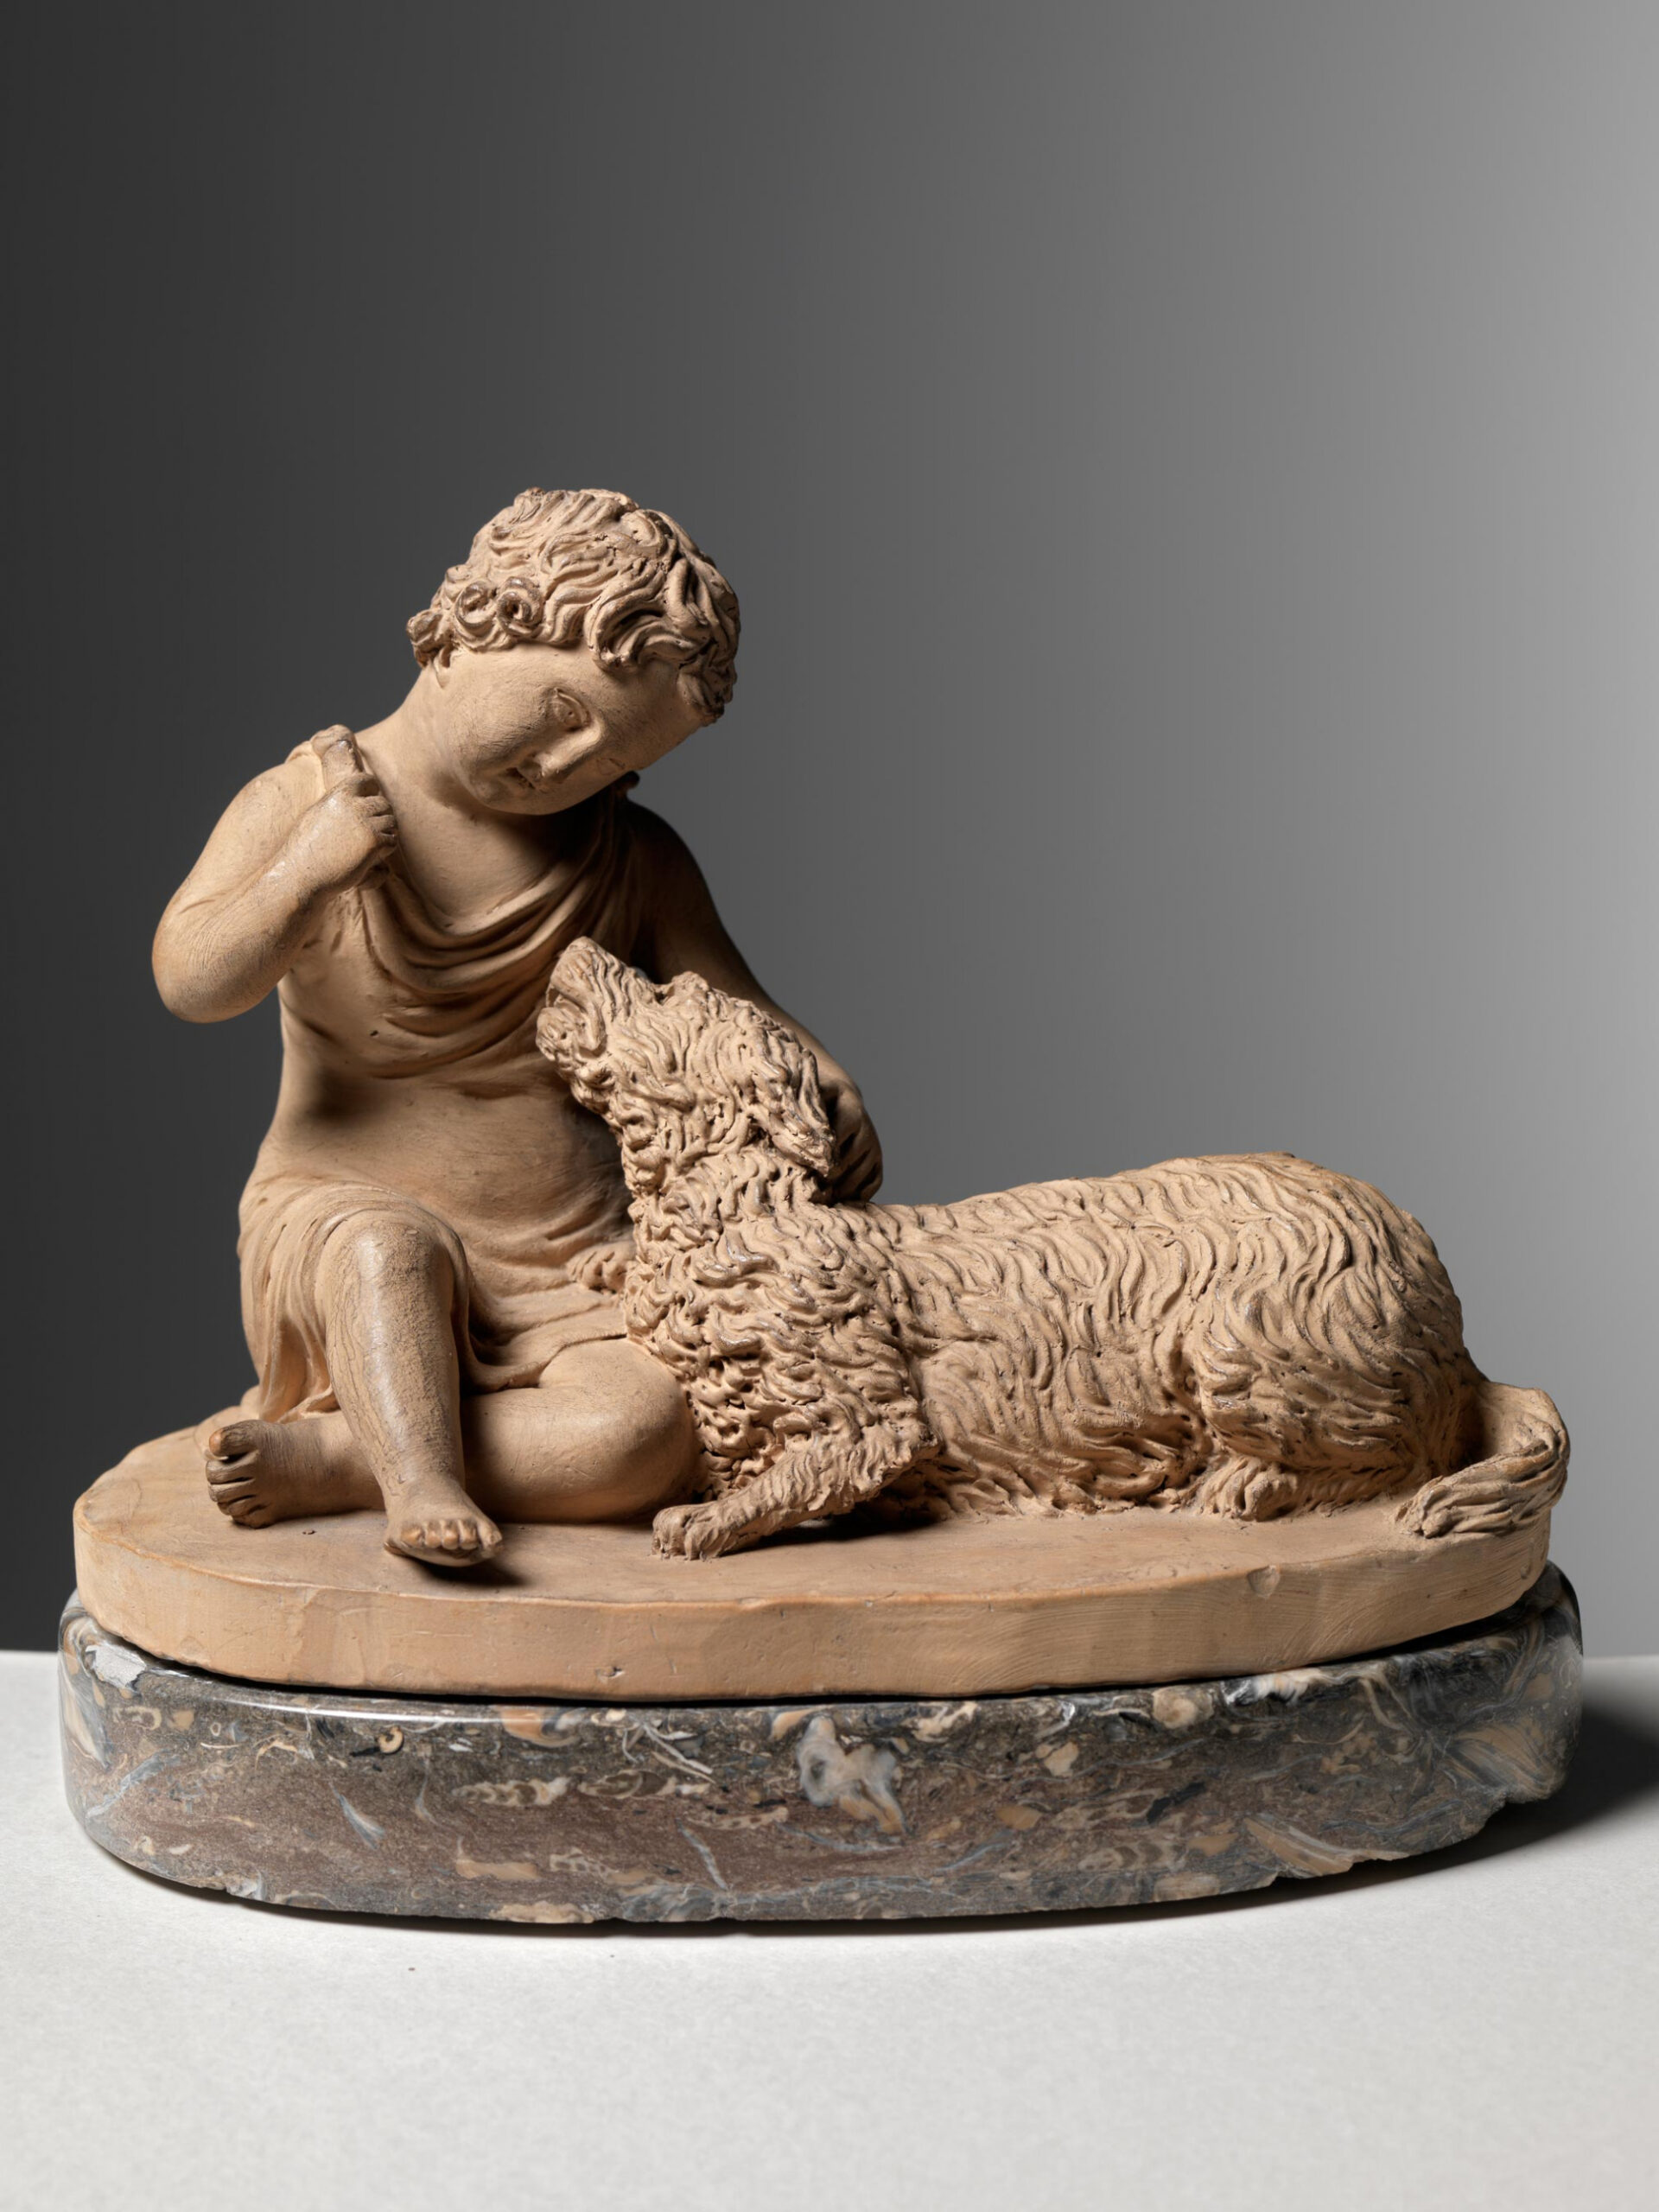 Joseph Gott - Boy with a Maremma sheepdog